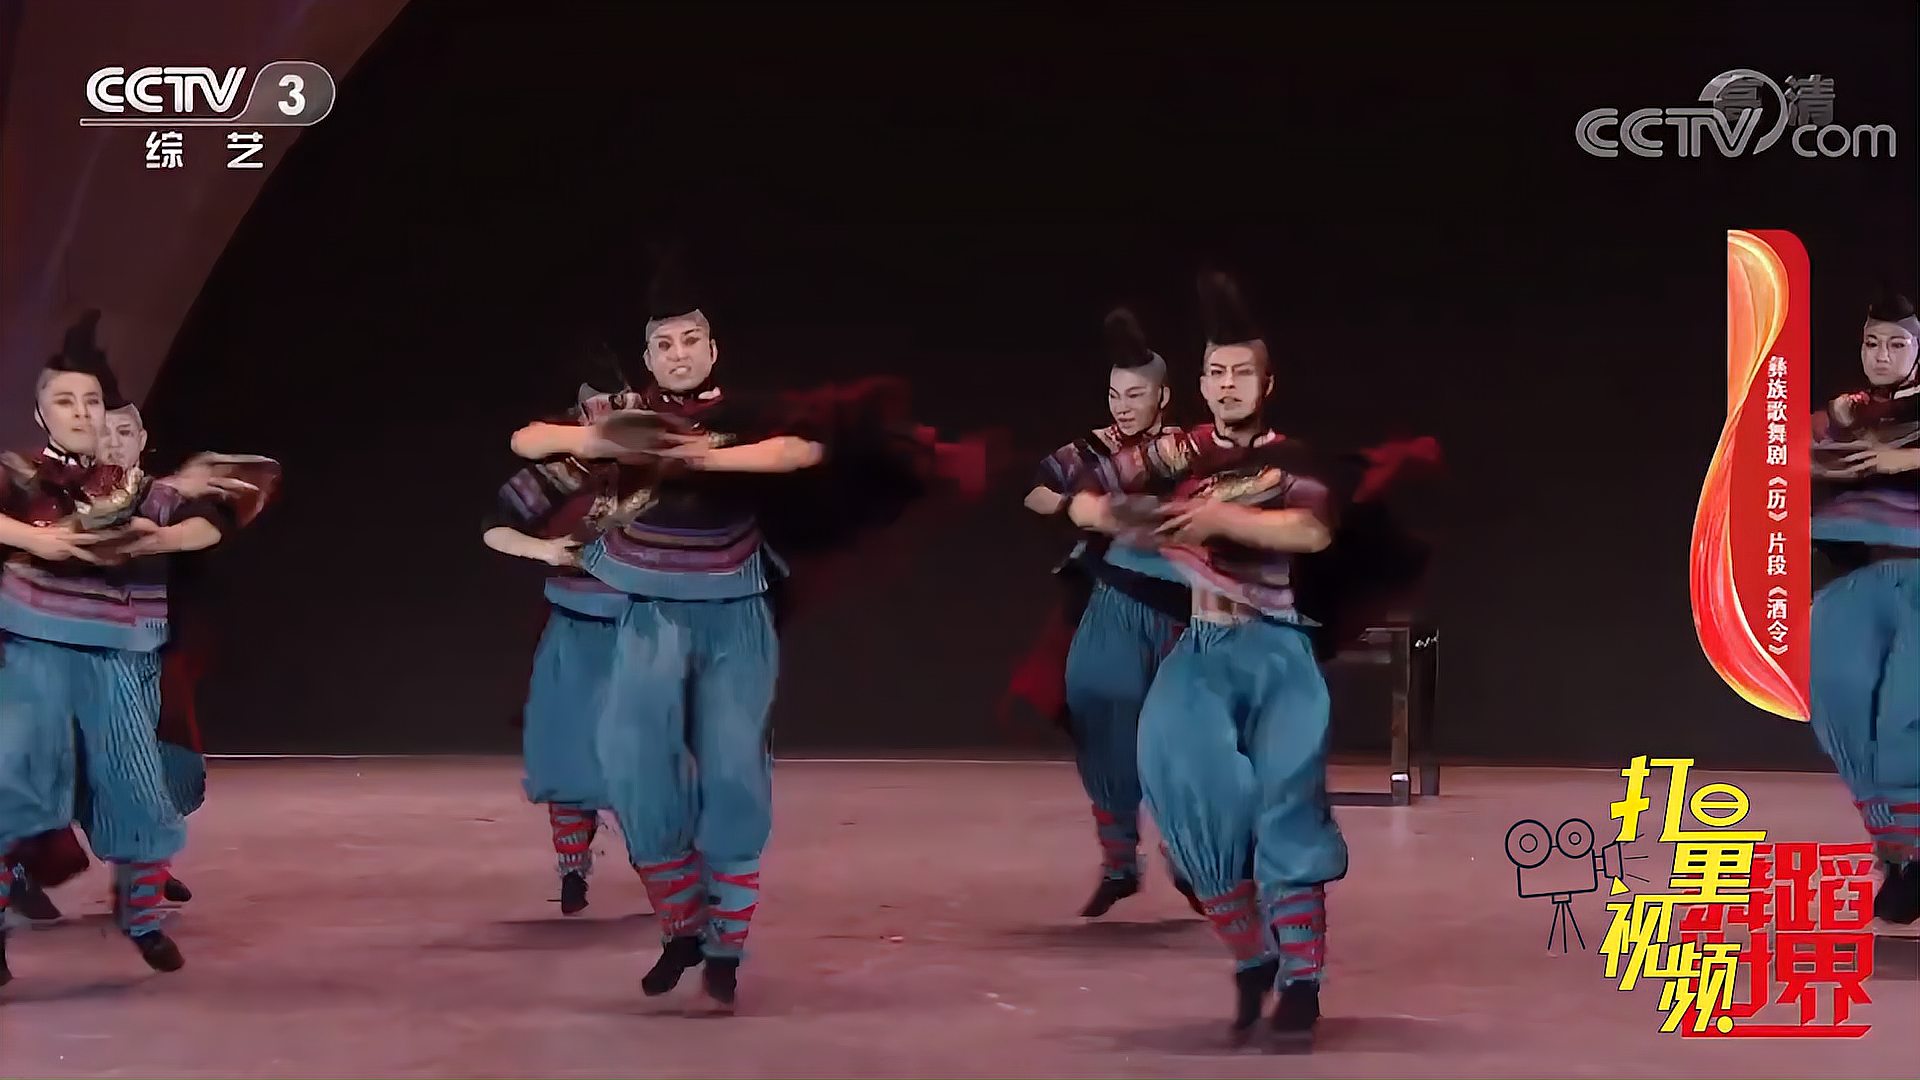 彝族歌舞剧《历》片段《酒令》真精彩,不容错过!丨舞蹈世界